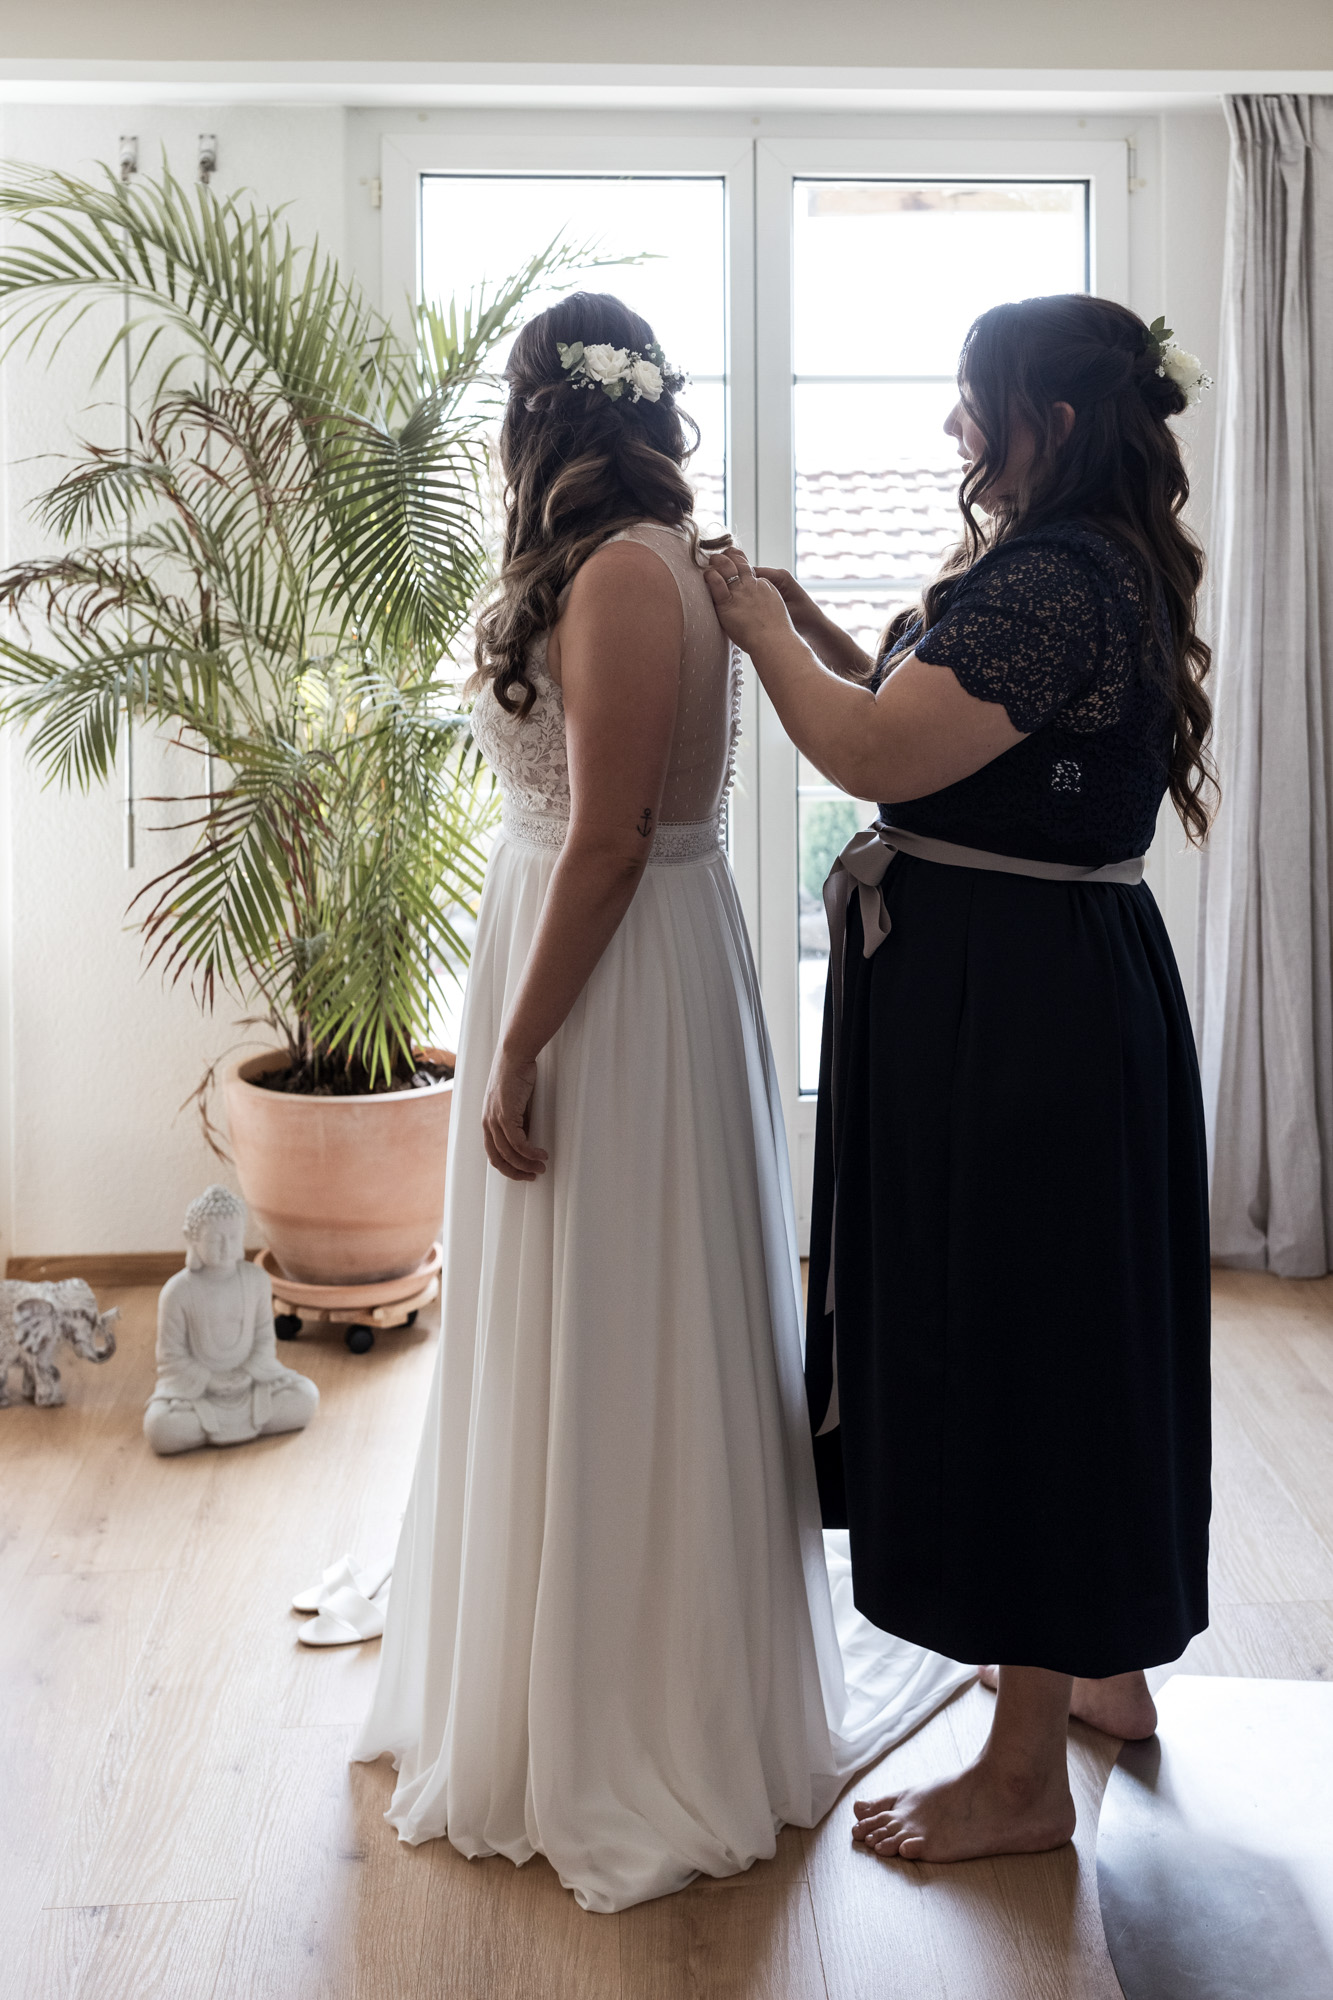 Die Schwester hilft beim Anziehen des Hochzeitskleides